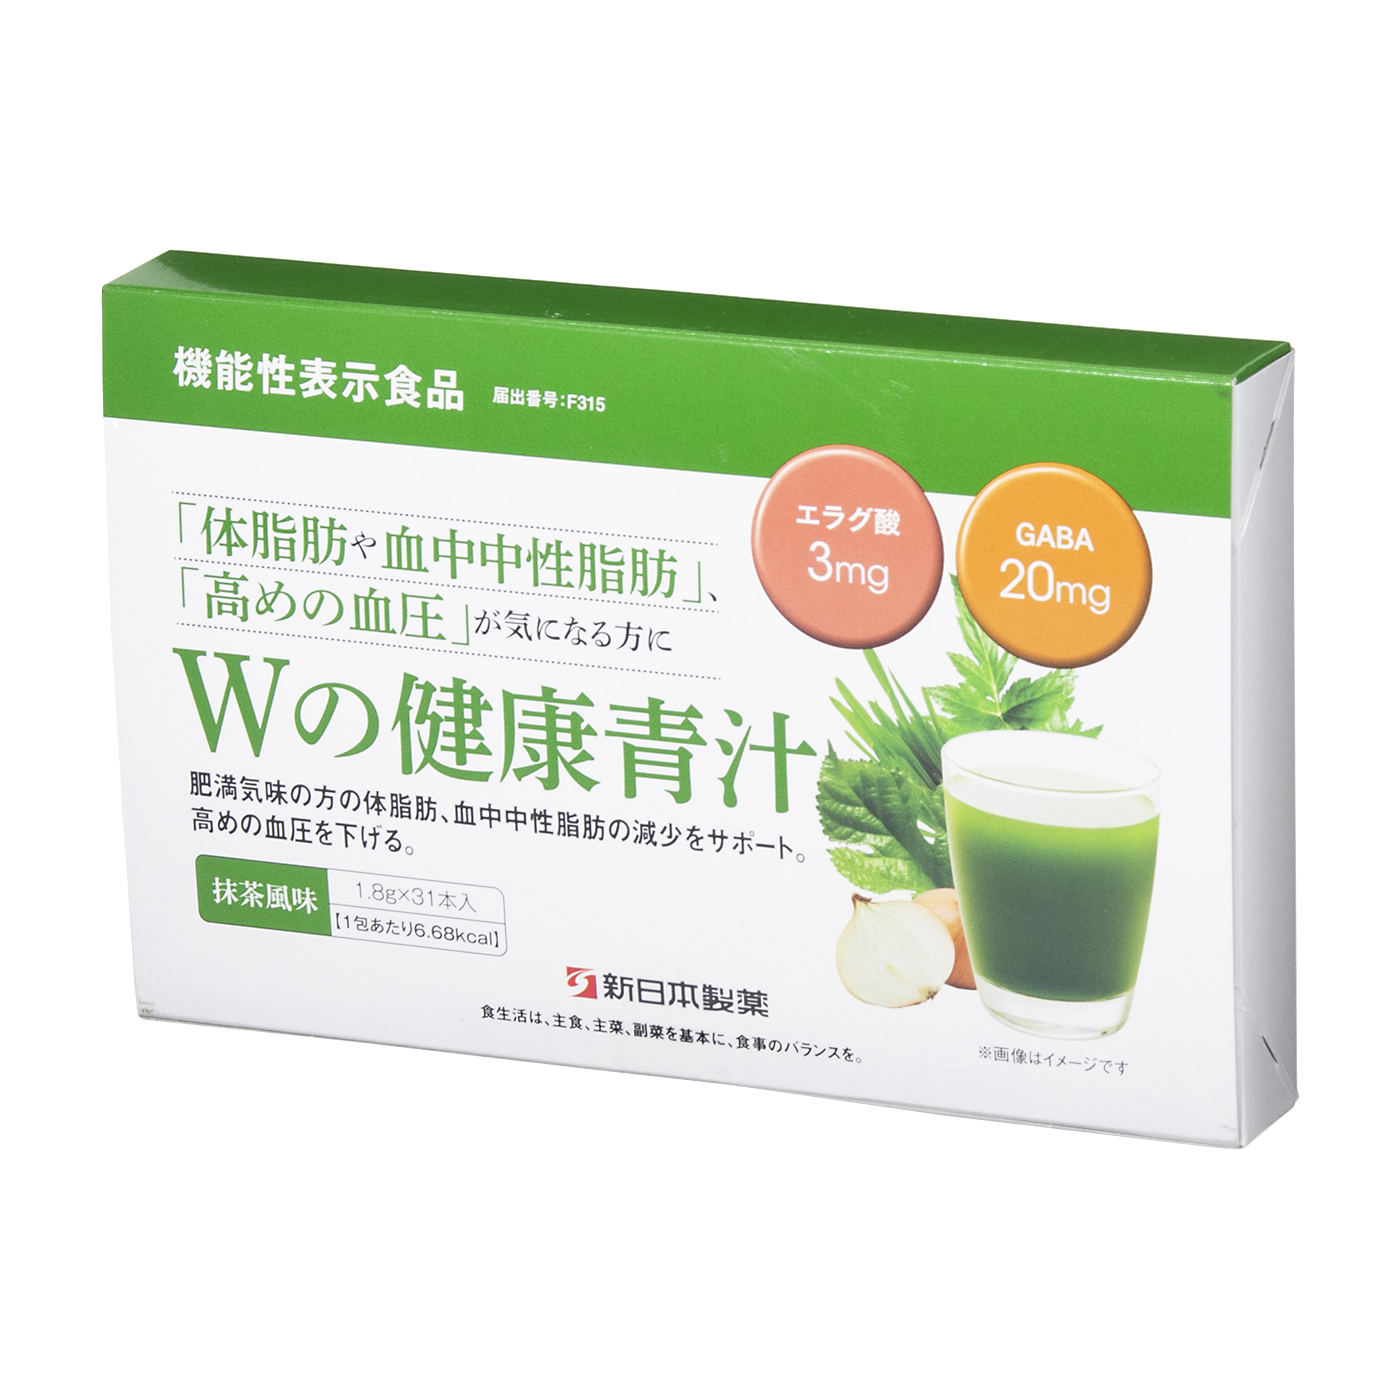 シニアファッション 【新品・未開封】Wの健康青汁 新日本製薬 新品・未 